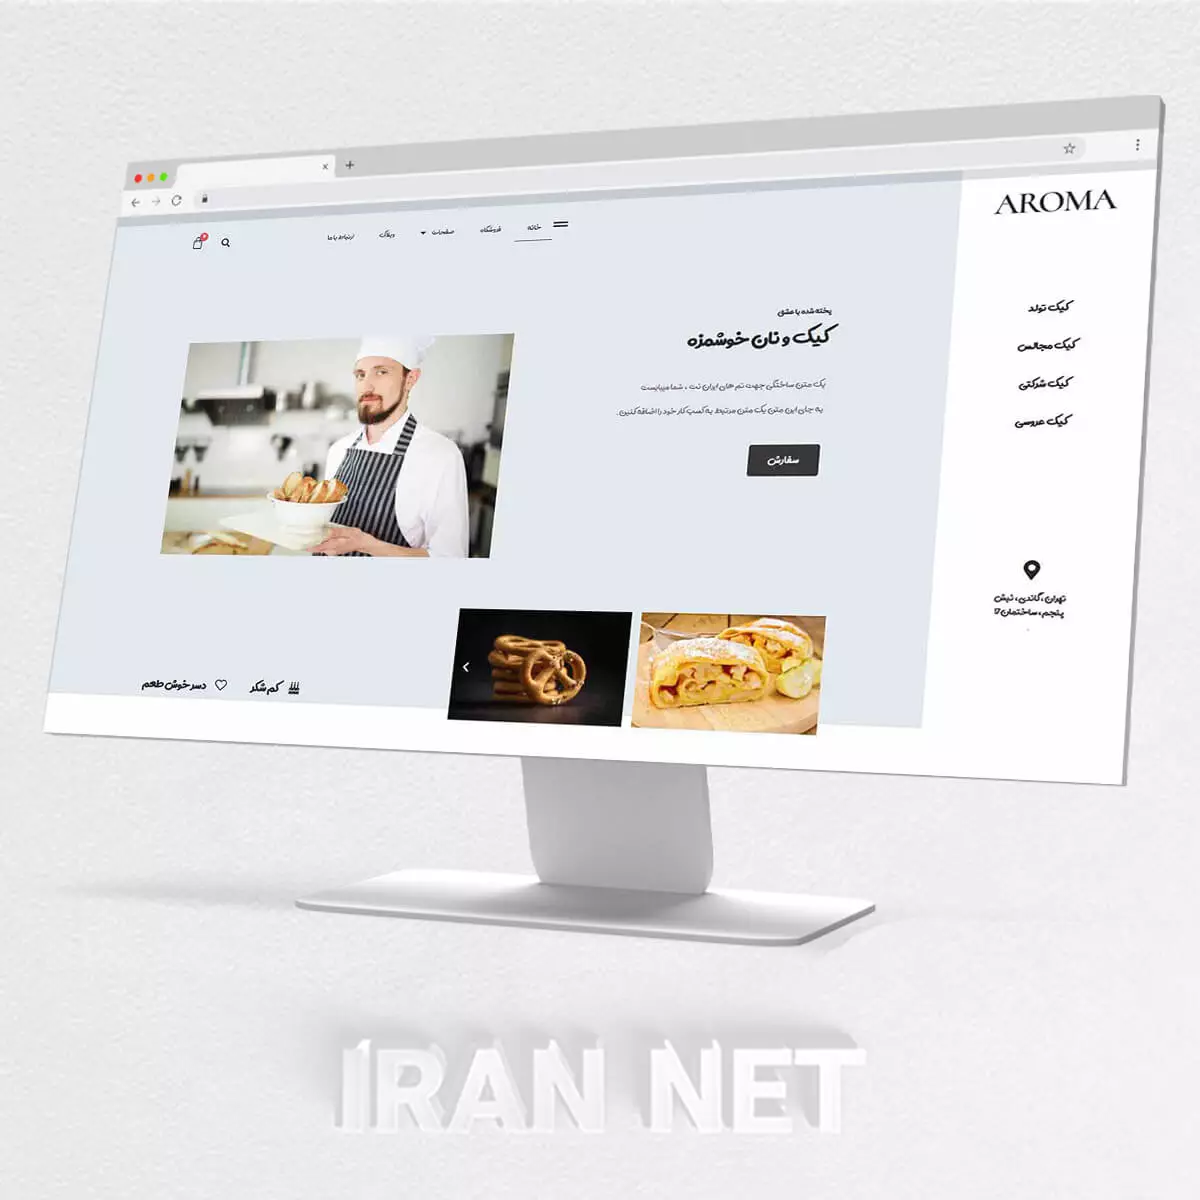 سایت رایگان-طراحی سایت رایگان-طراحی سایت رایگان شیرینی فروشی-ایران نت